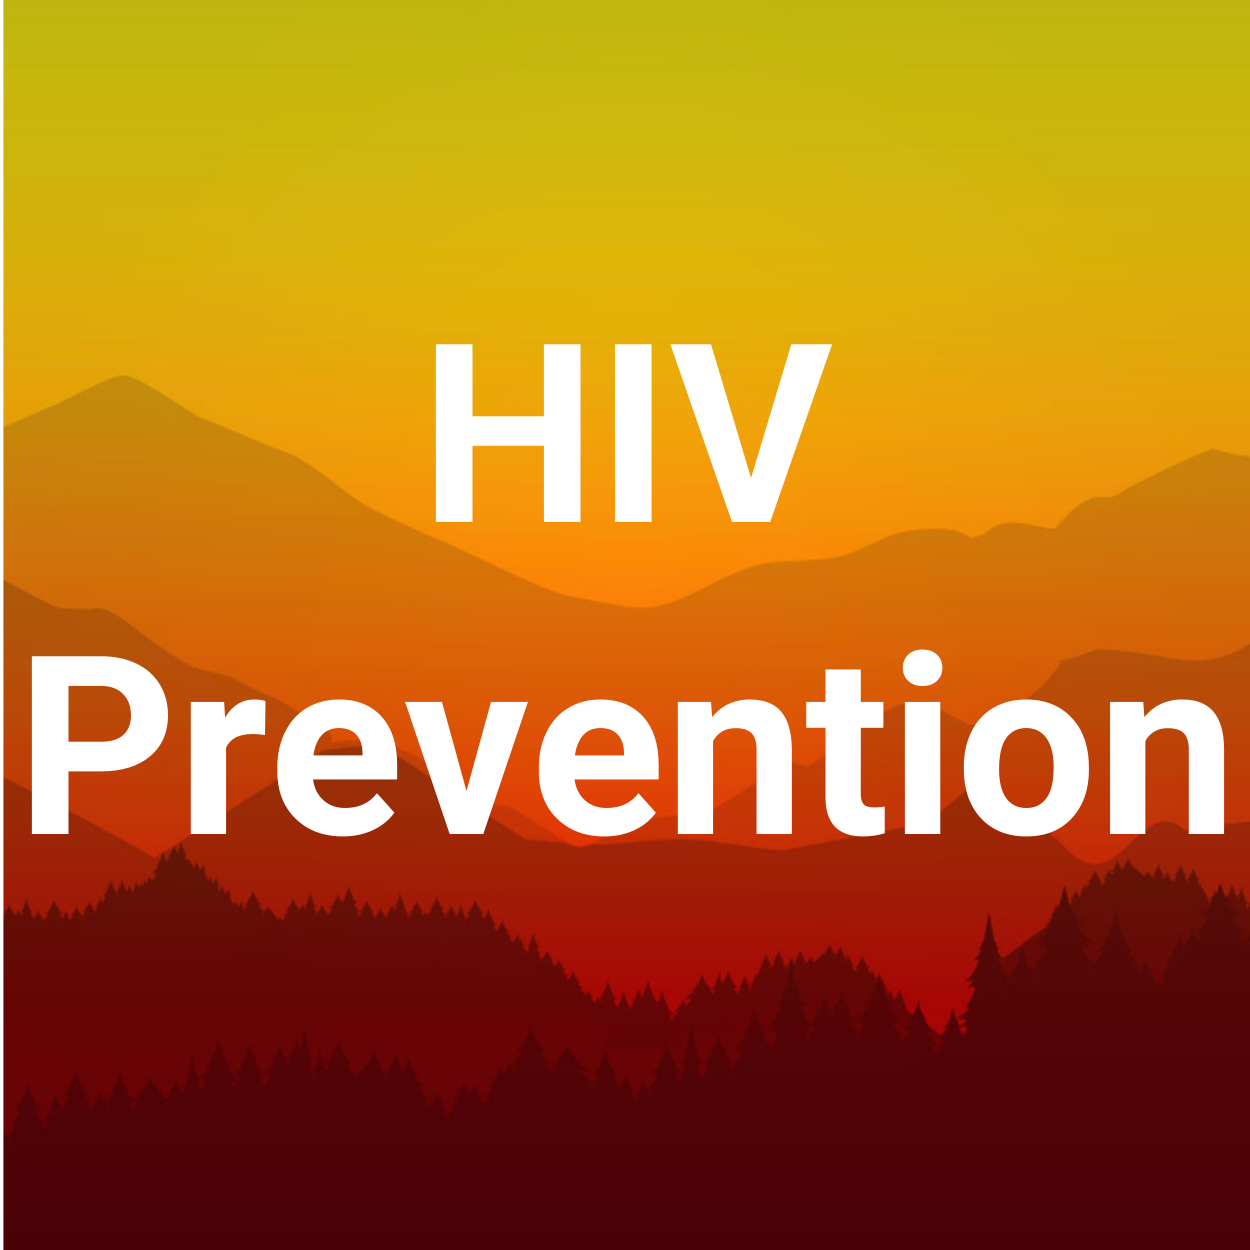 HIVPrevention